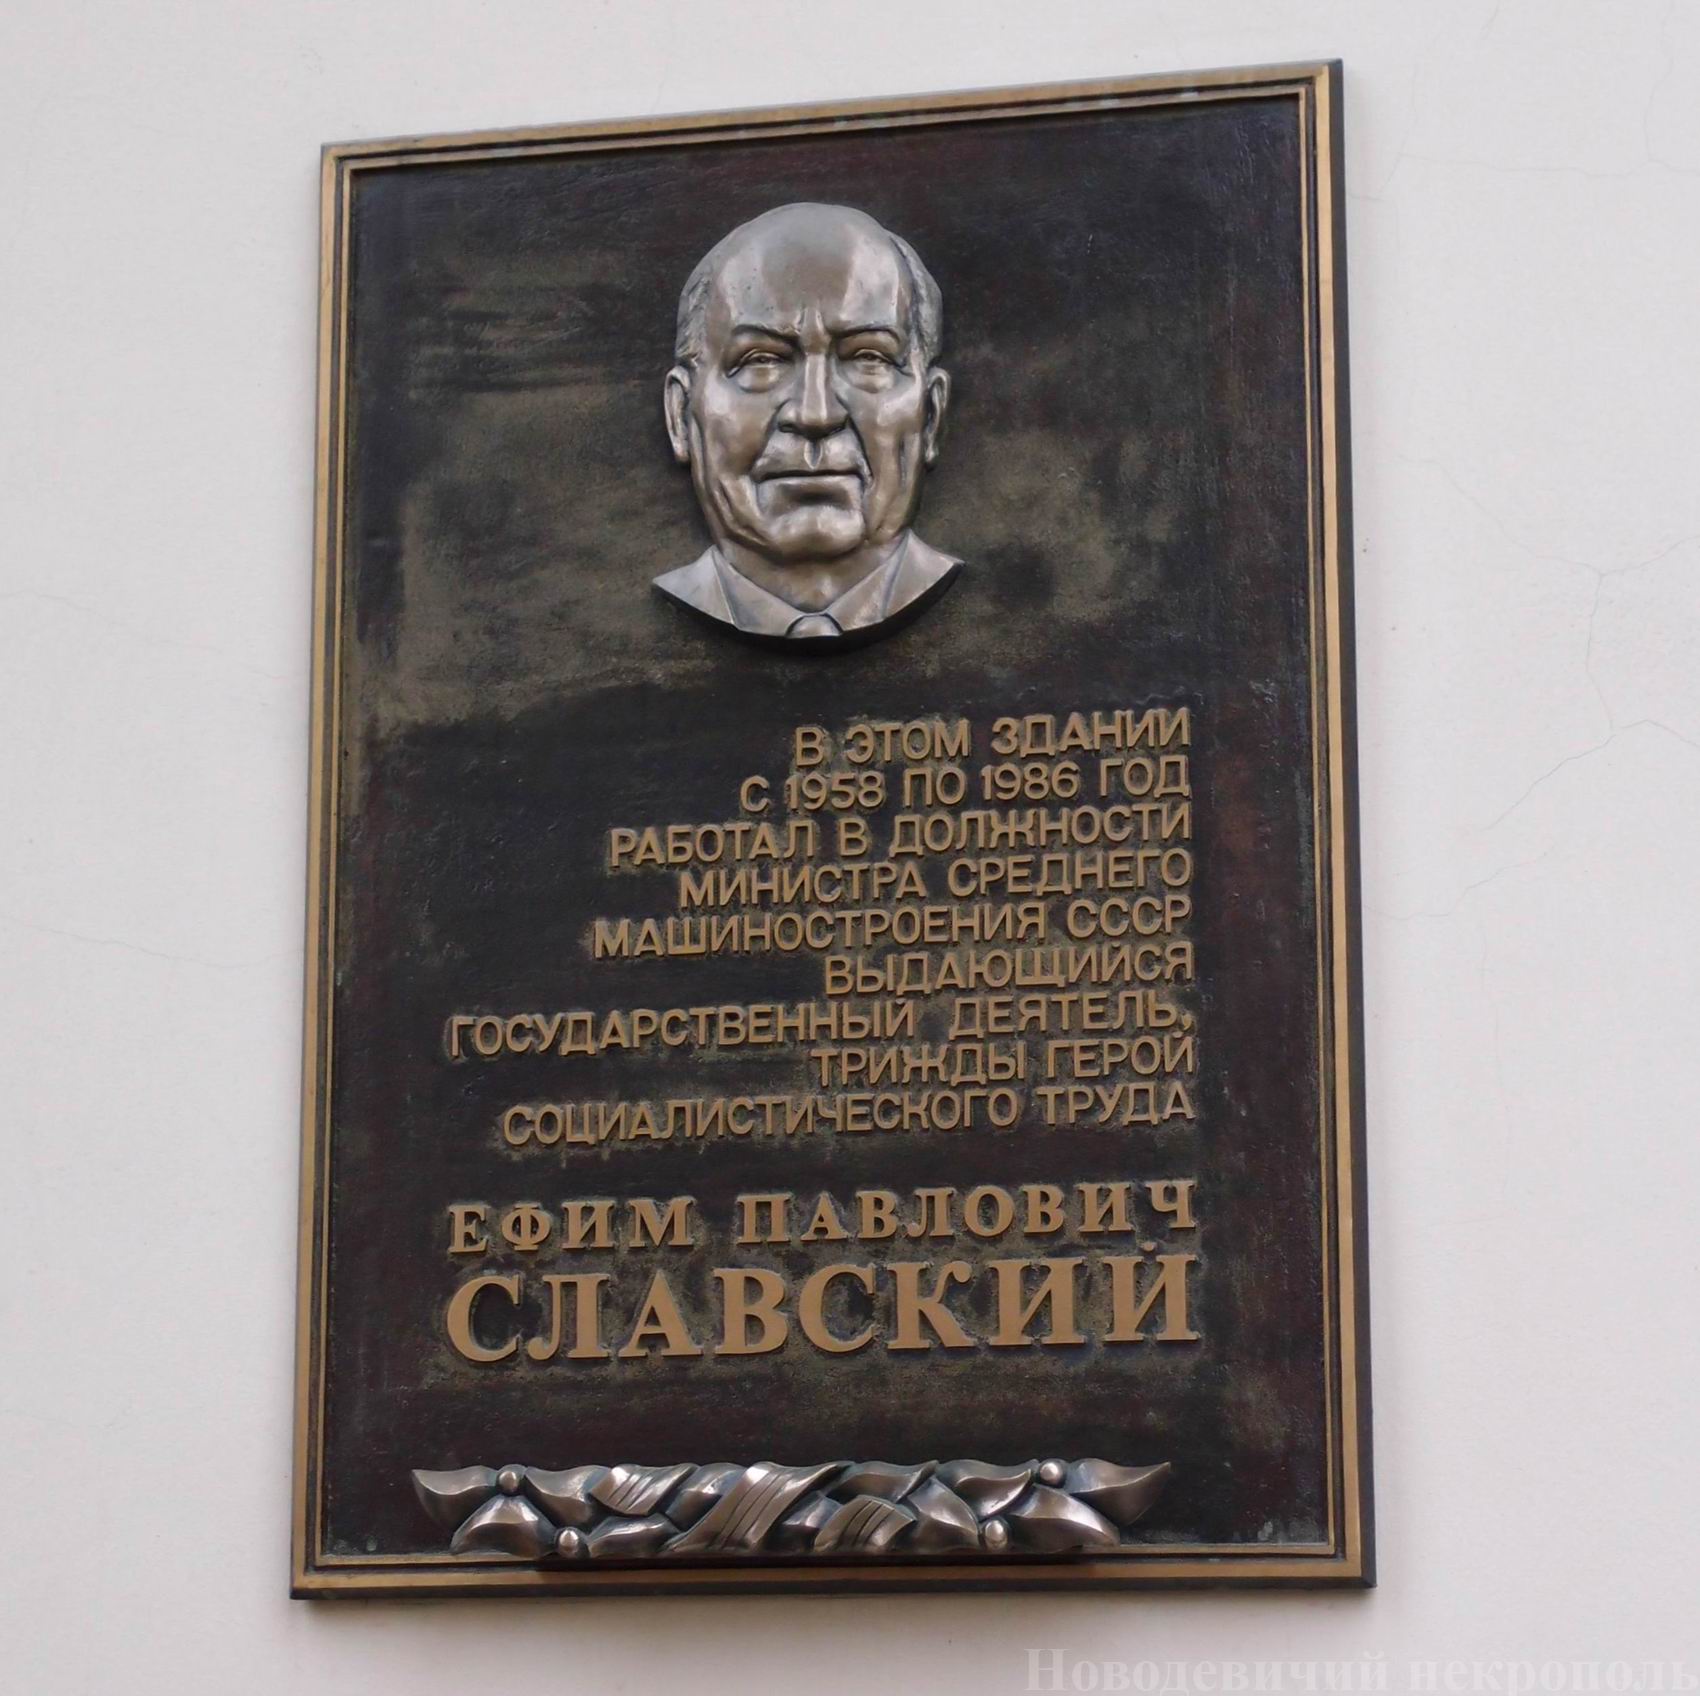 Мемориальная доска Славскому Е.П. (1898–1991), на улице Большая Ордынка, дом 24, открыта в марте 2007.